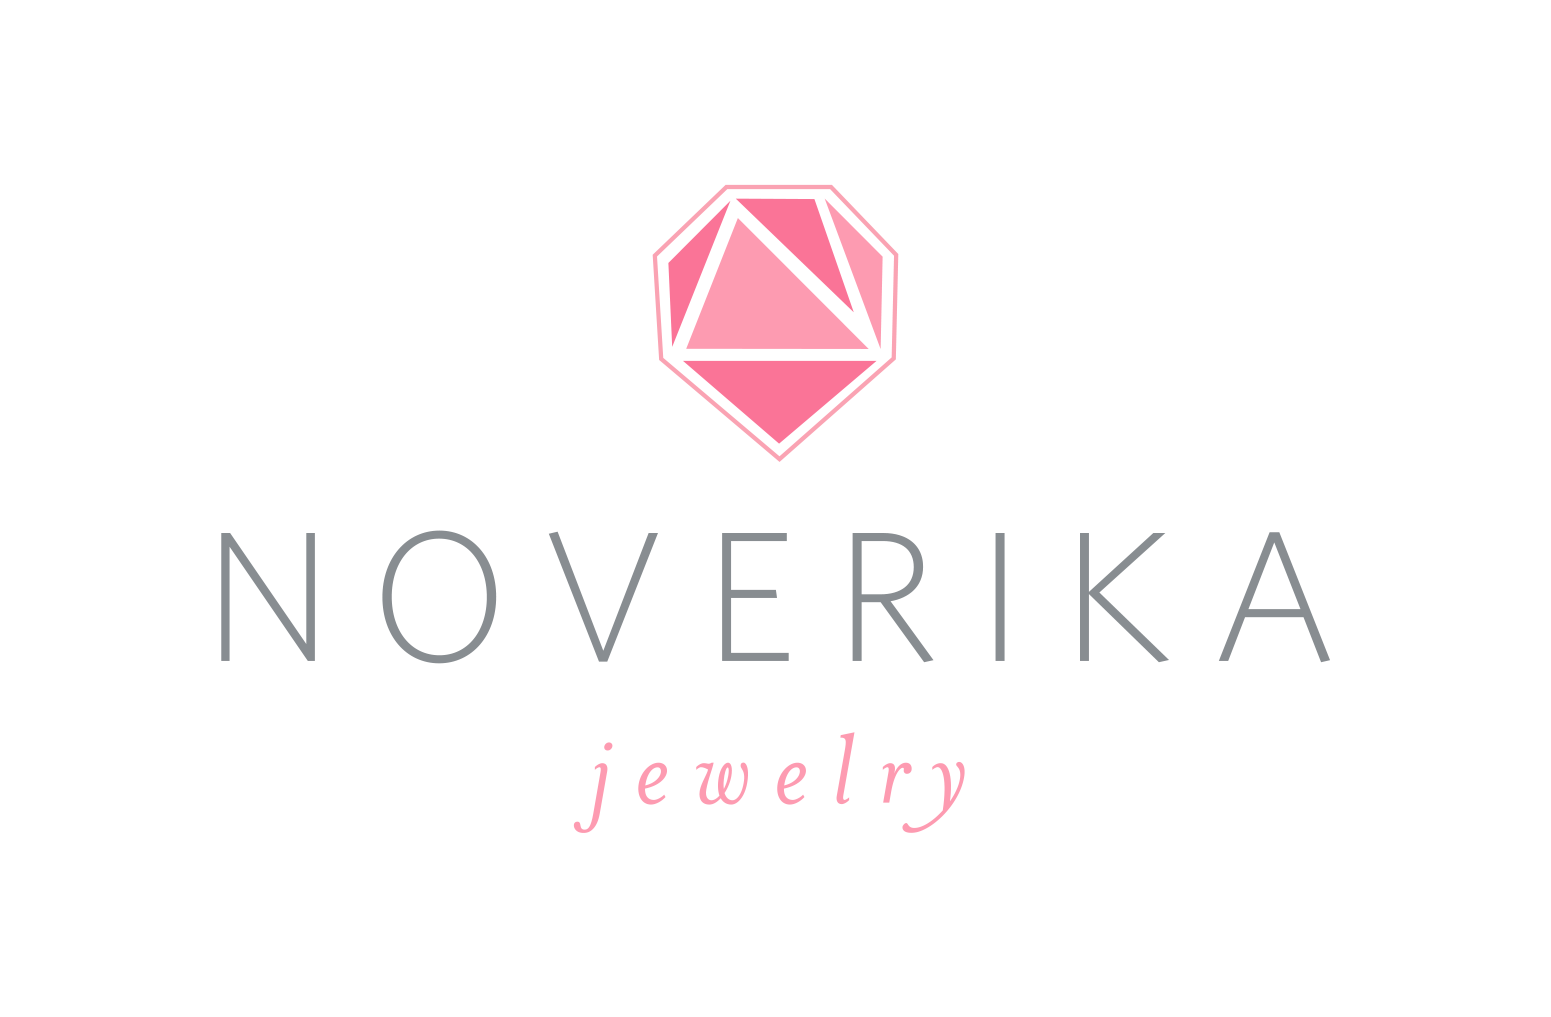 Noverika Jewelry